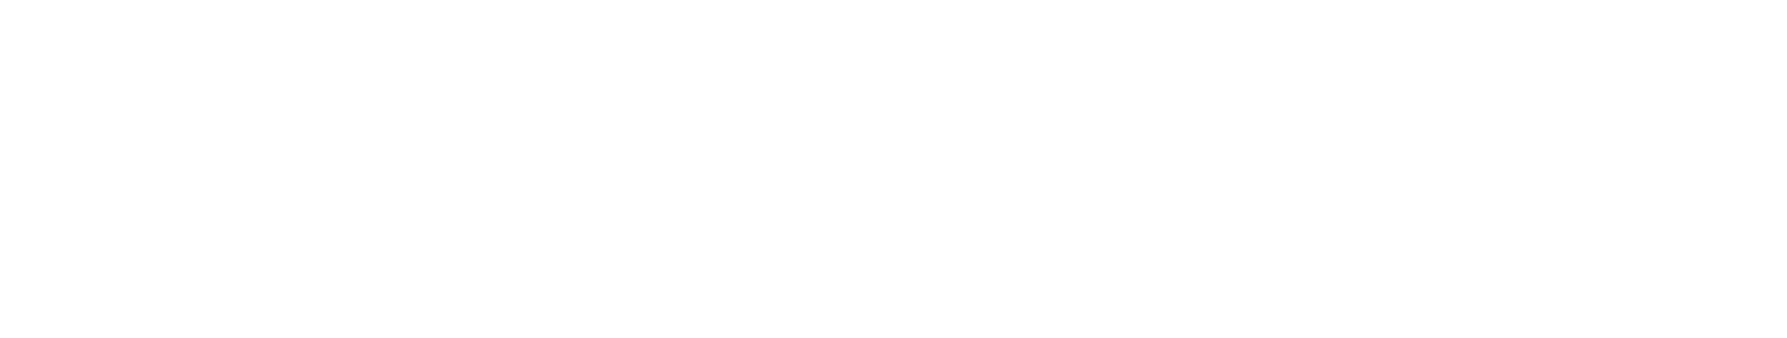 Logotipo TR junto a un texto que dice "Plan de Recuperación, Transformación y Resistencia"